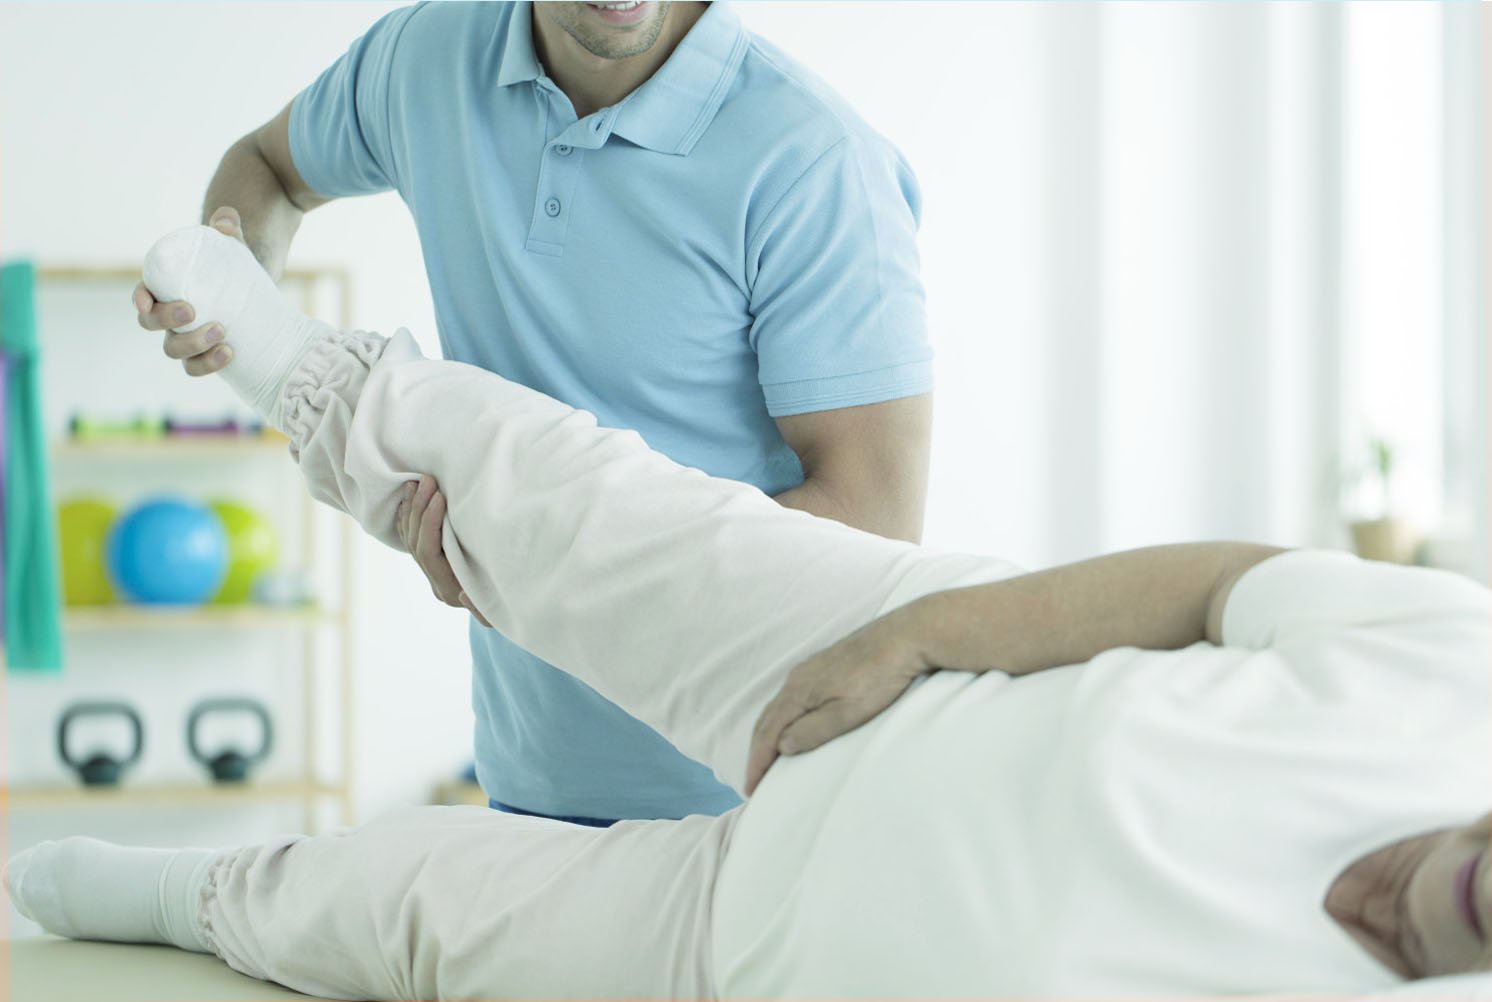 A Fisioterapia no pós operatório para a artroplastia de quadril pode ajudar muito.